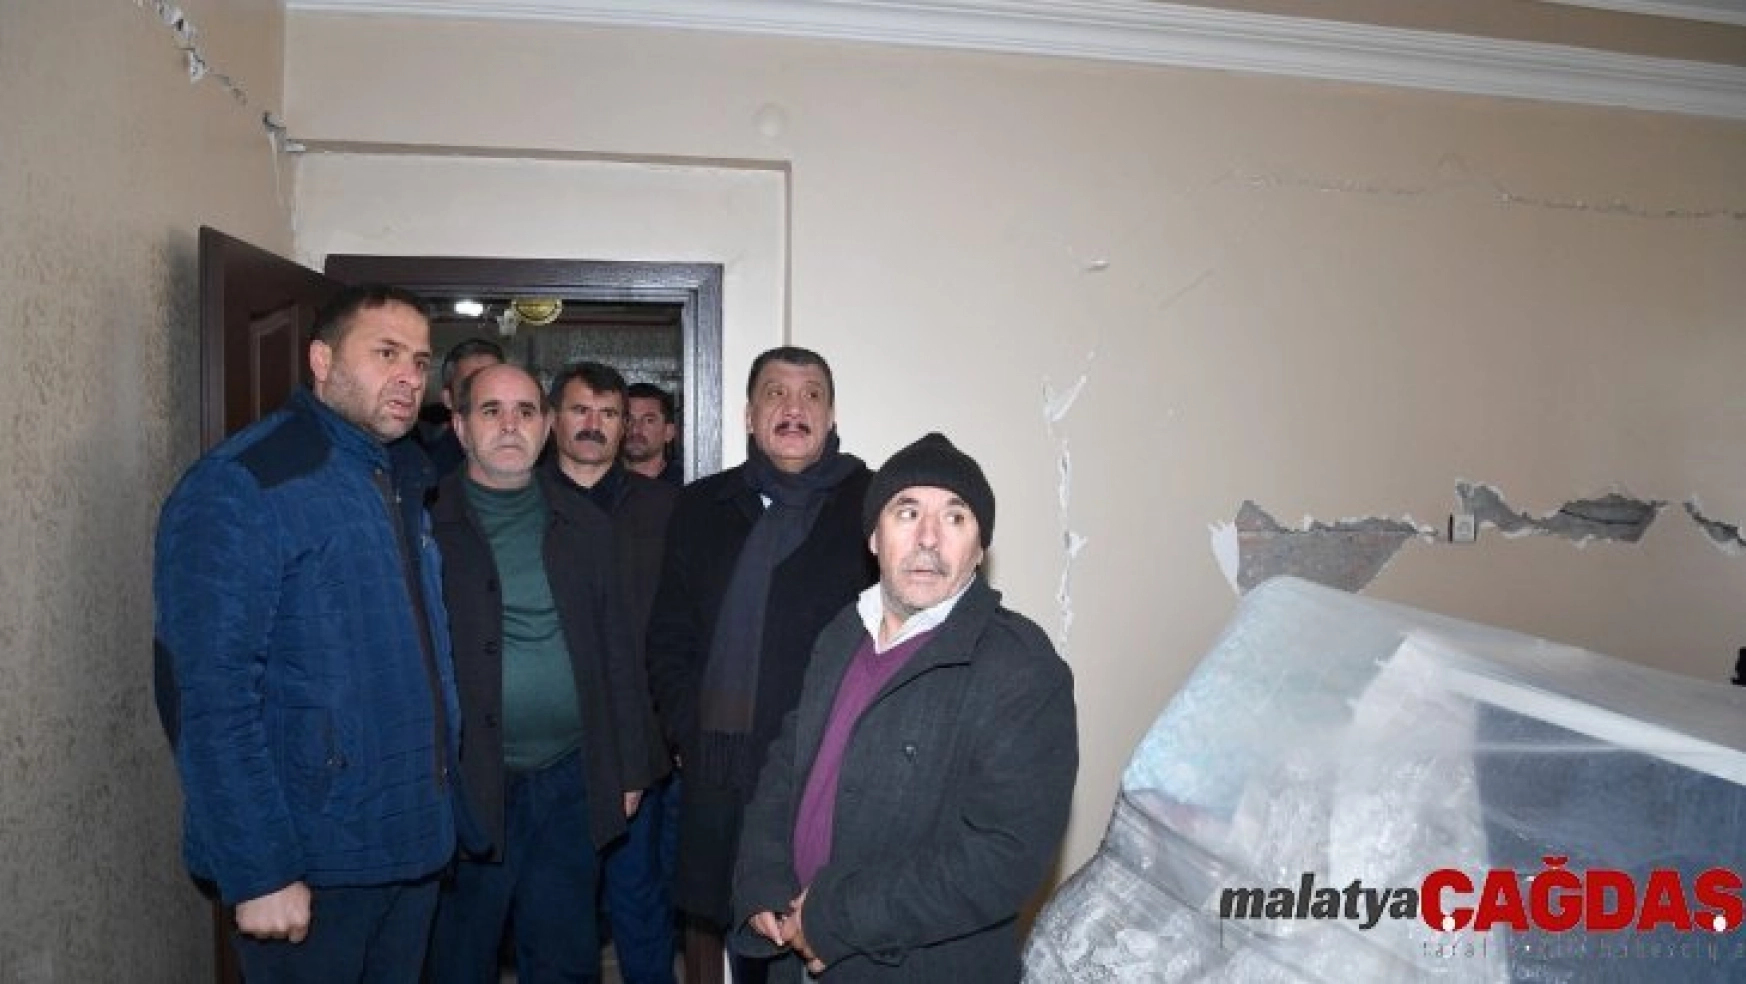 Başkan Gürkan depremde hasar gören yerleri ziyaret etti